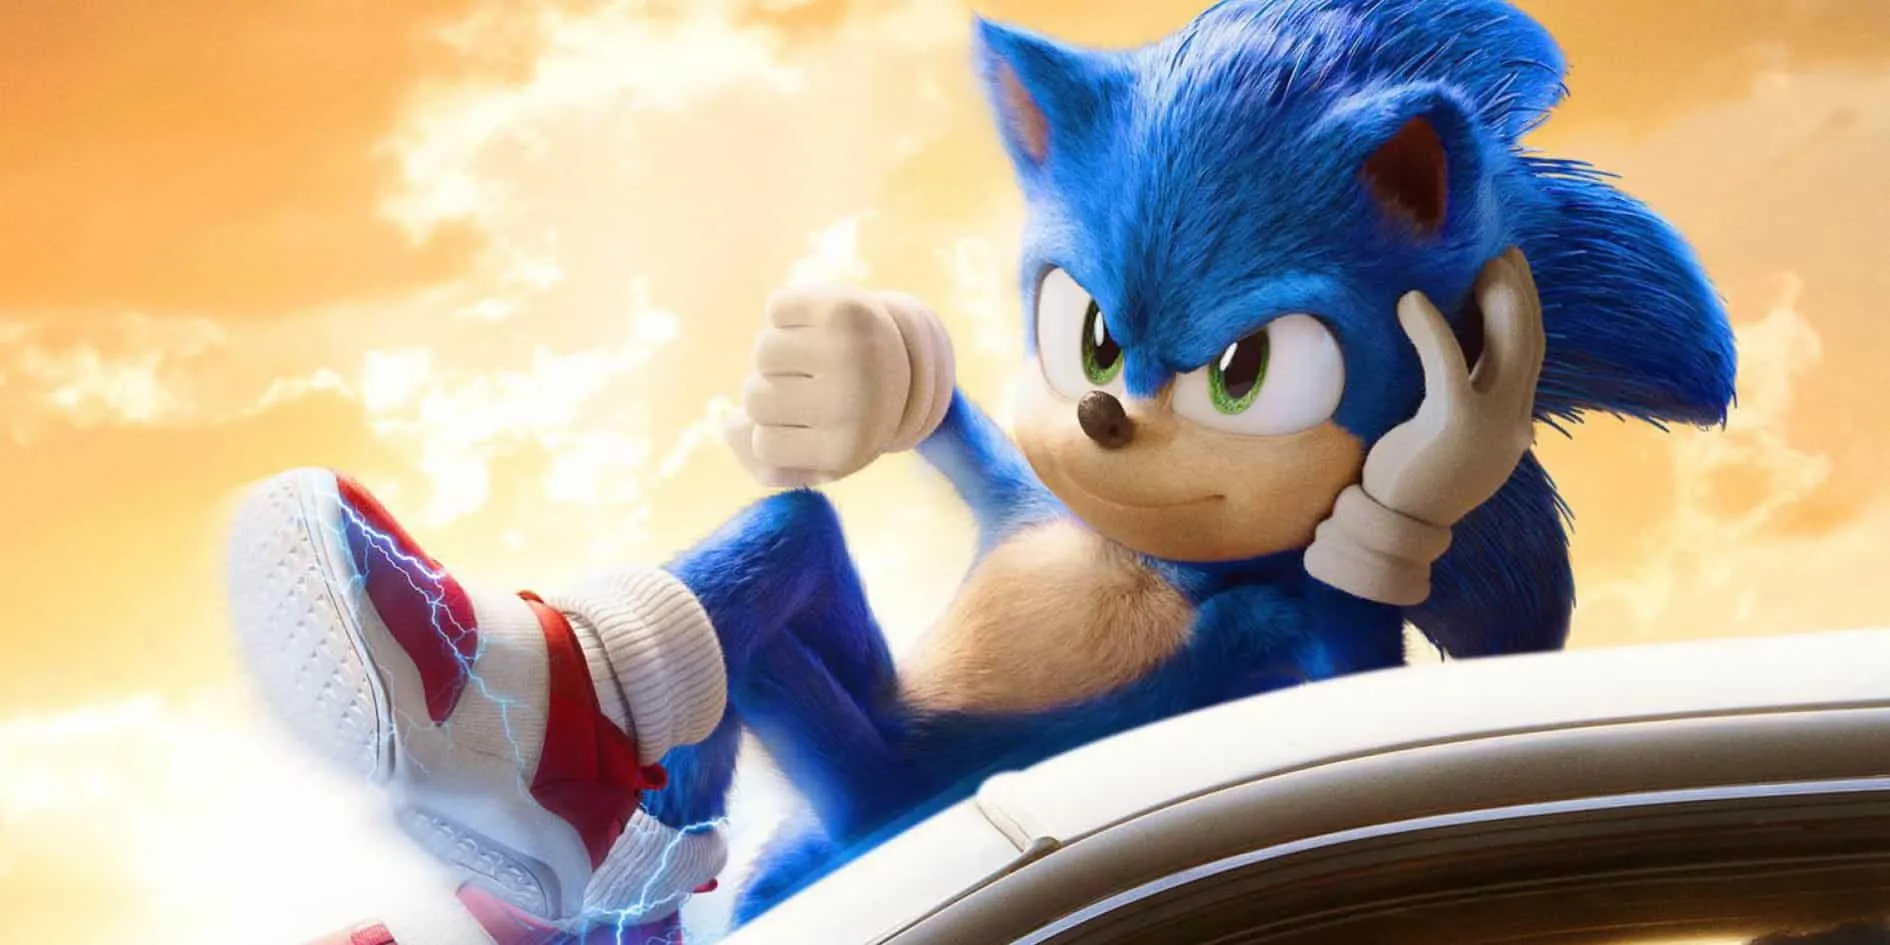 Юдзи Нака, один из создателей Sonic the Hedgehog, признал себя виновным в инсайдерской торговле